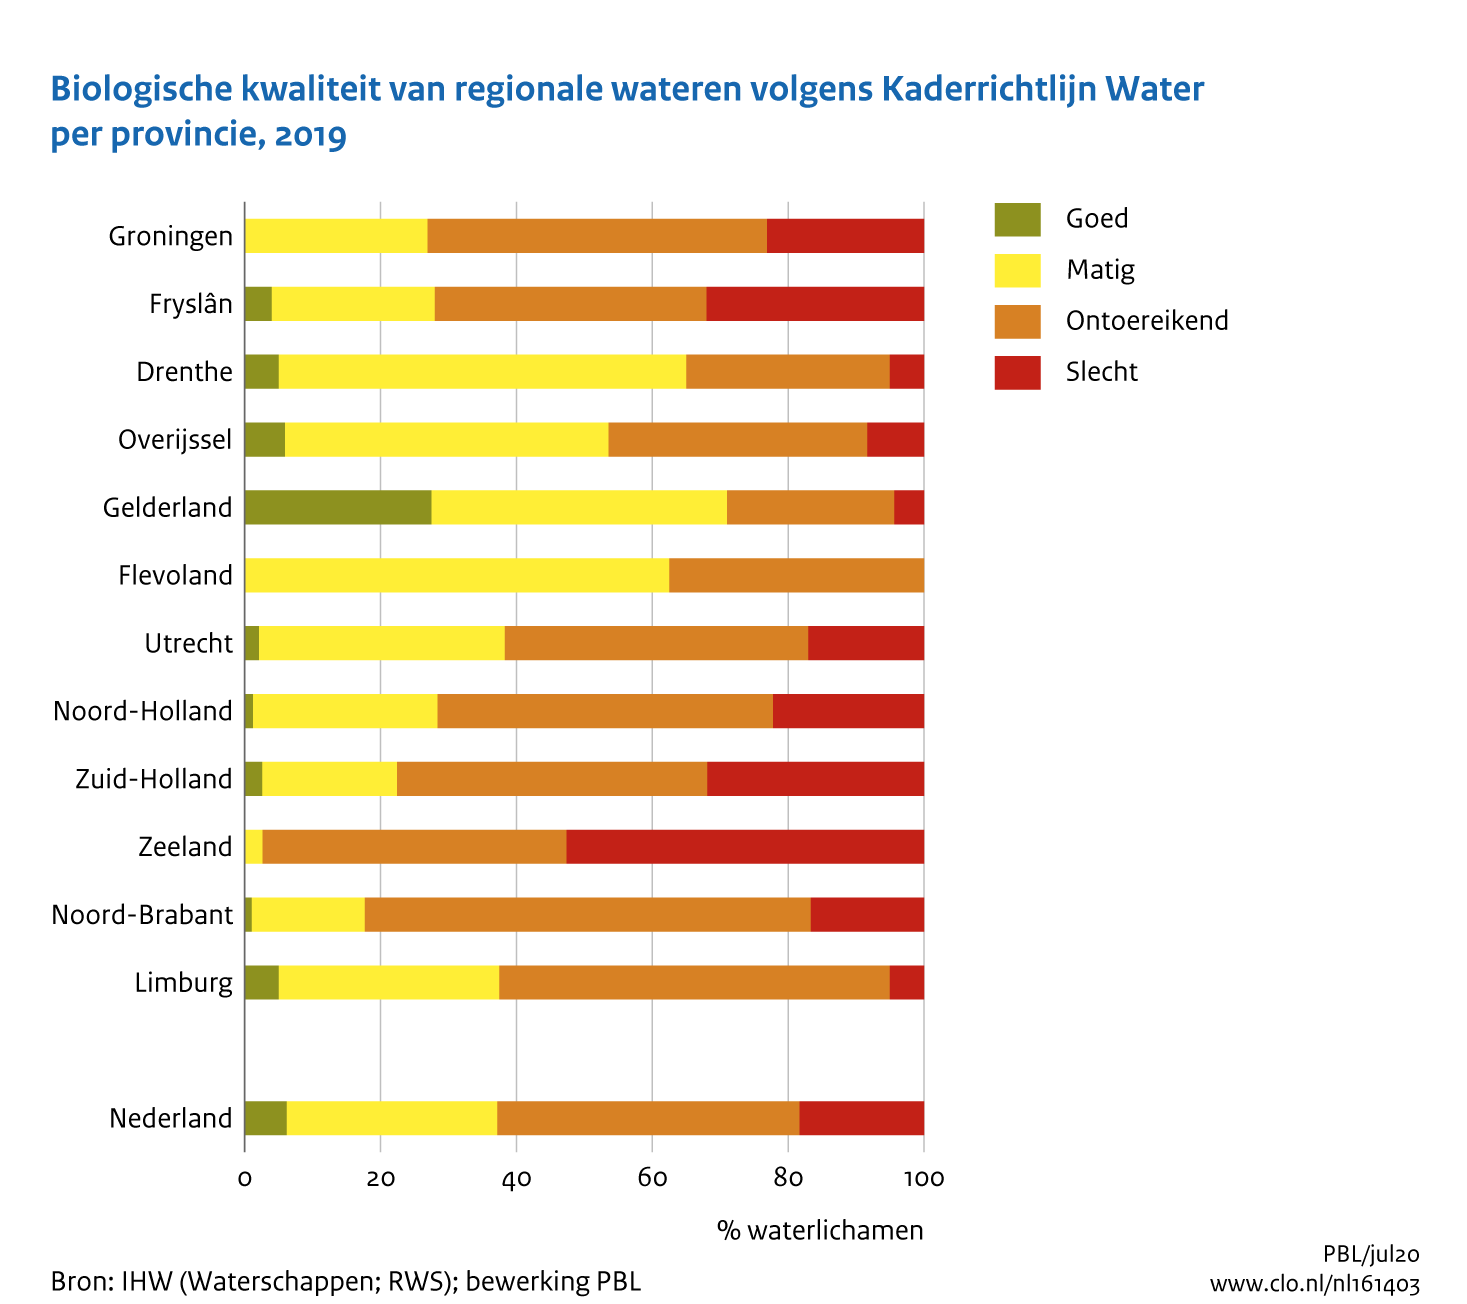 Figuur Beoordeling biologische waterkwaliteit KRW. In de rest van de tekst wordt deze figuur uitgebreider uitgelegd.